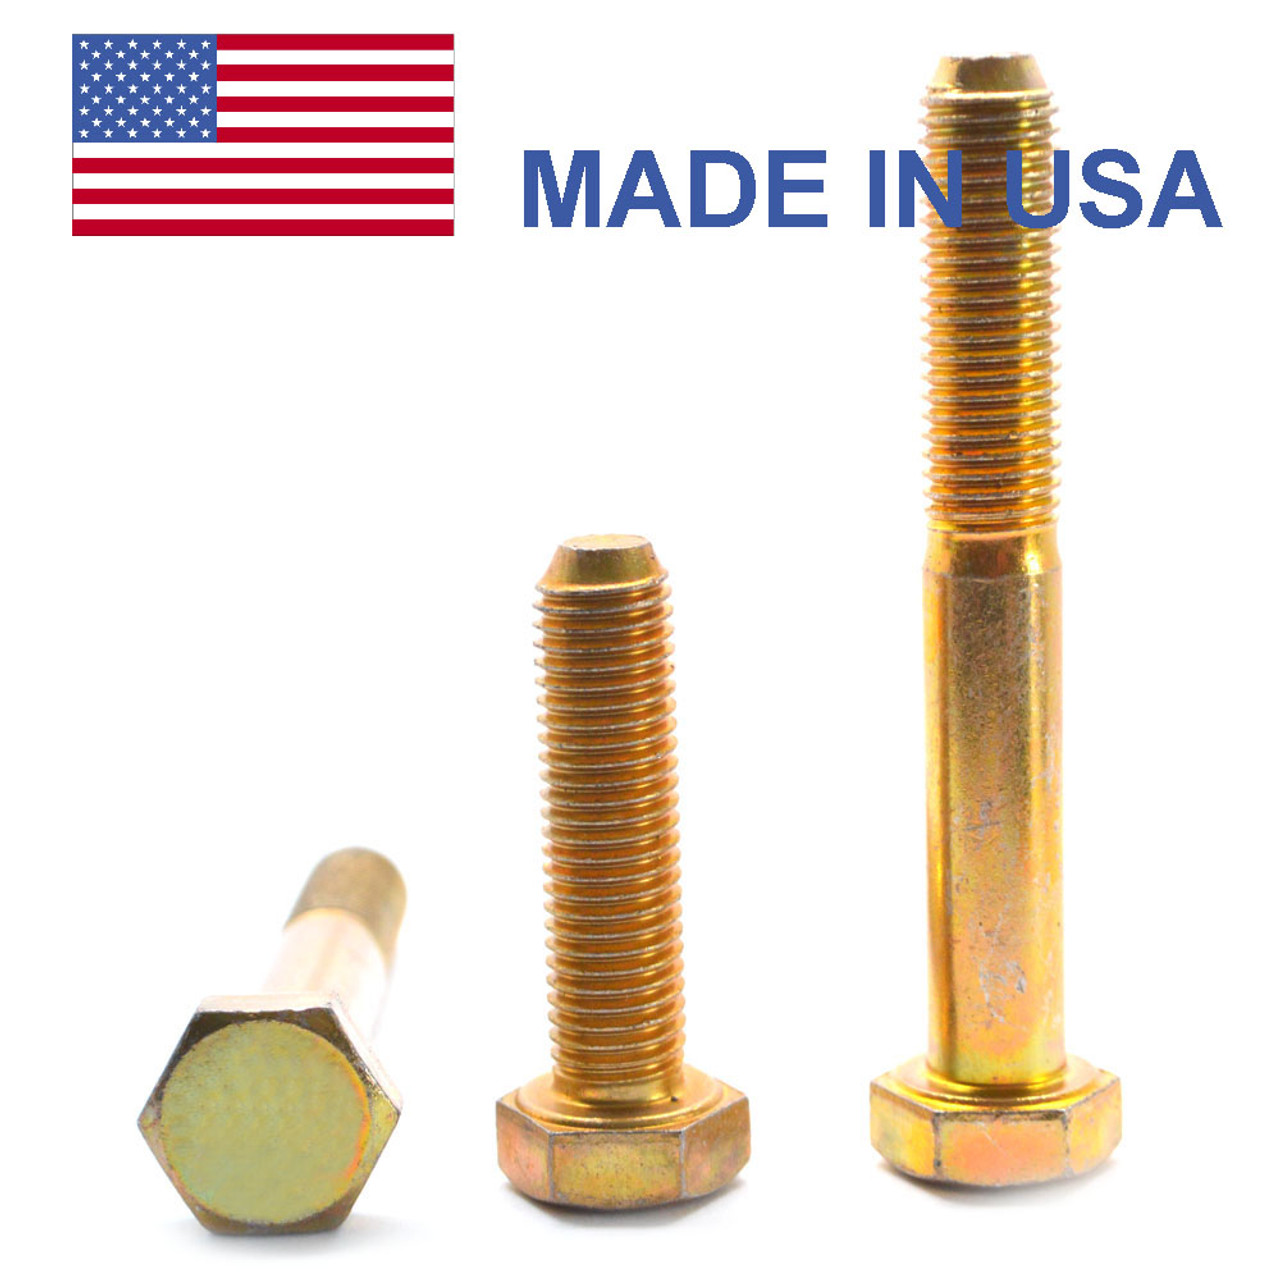 5/16"-24 x 2 1/2" (PT) Fine Thread Grade 8 Hex Cap Screw (Bolt) - USA Alloy Steel Yellow Zinc Plated